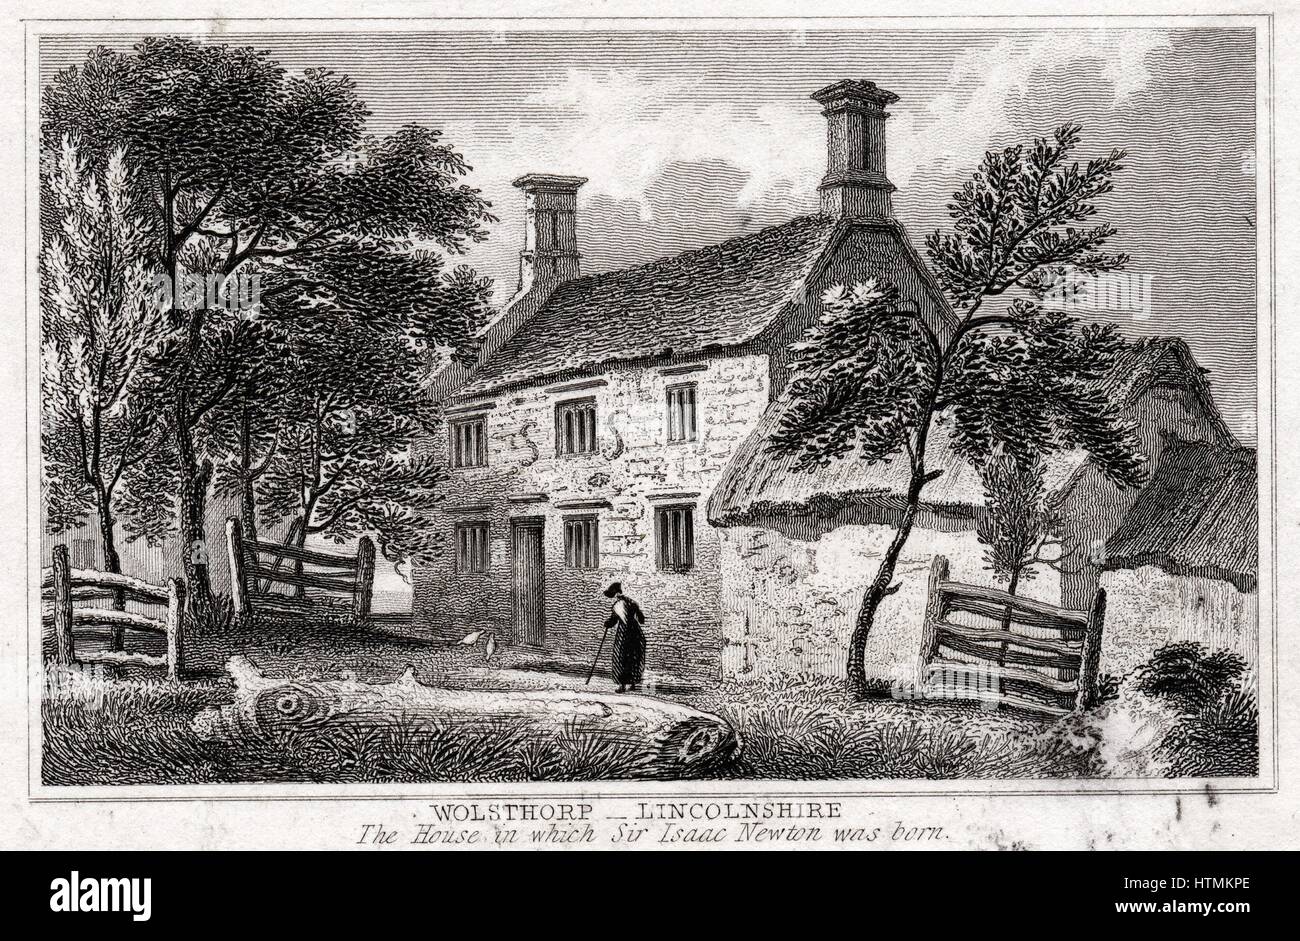 Woolsthorpe Manor, in der Nähe von Grantham, Lincolnshire, England, Geburtsort von Isaac Newton (1642-1727) Anfang des 19. Jahrhunderts Kupferstich Stockfoto